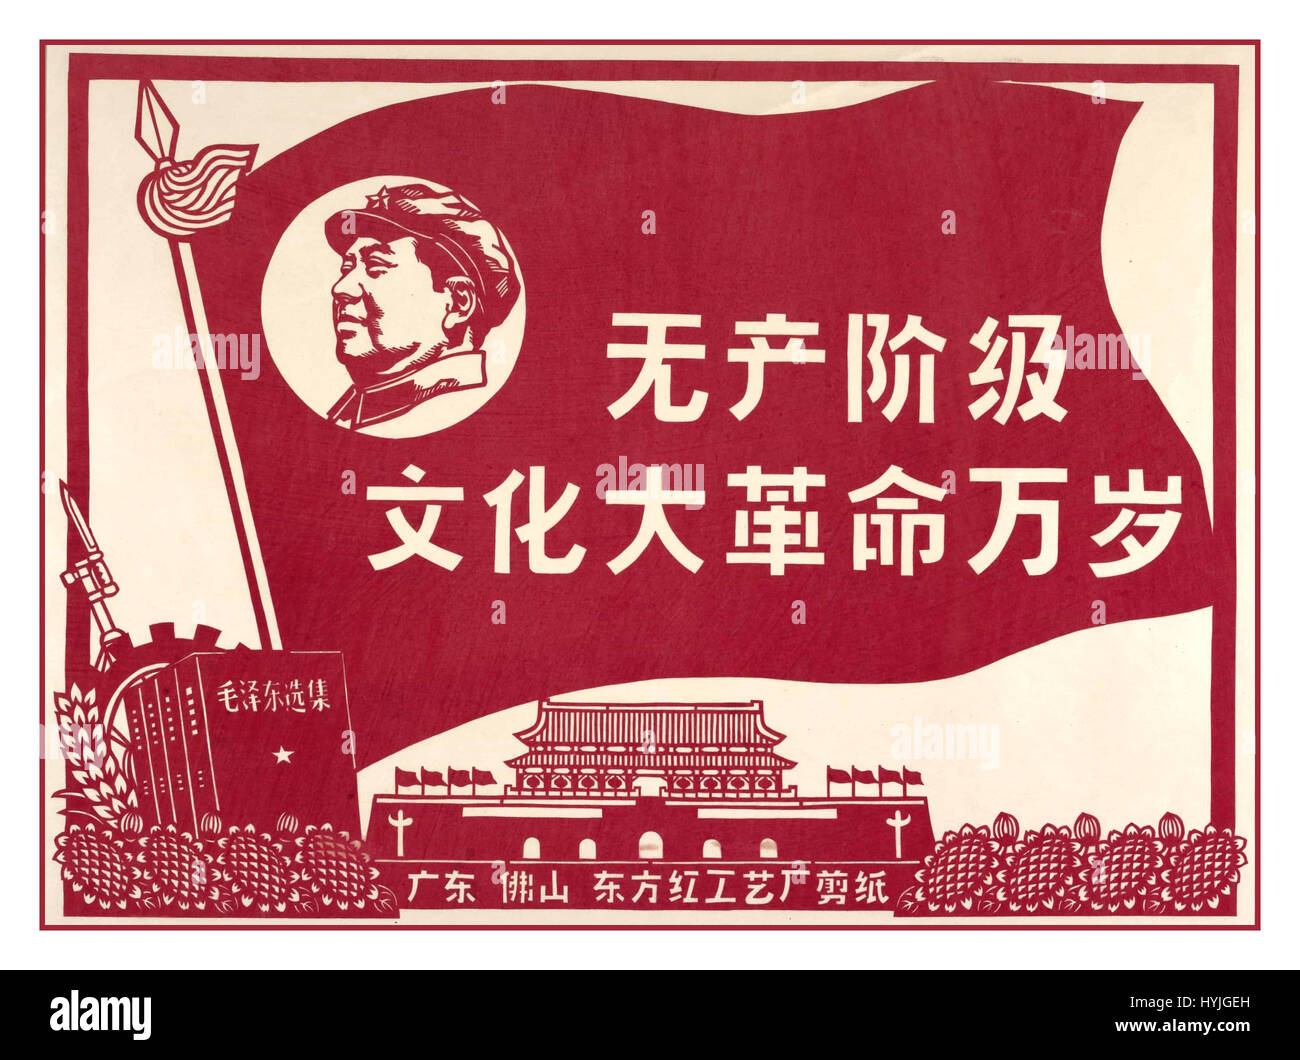 Storico Vintage propaganda politica poster per il Presidente Mao "Evviva il grande proletario rivoluzione culturale in Cina" Foto Stock